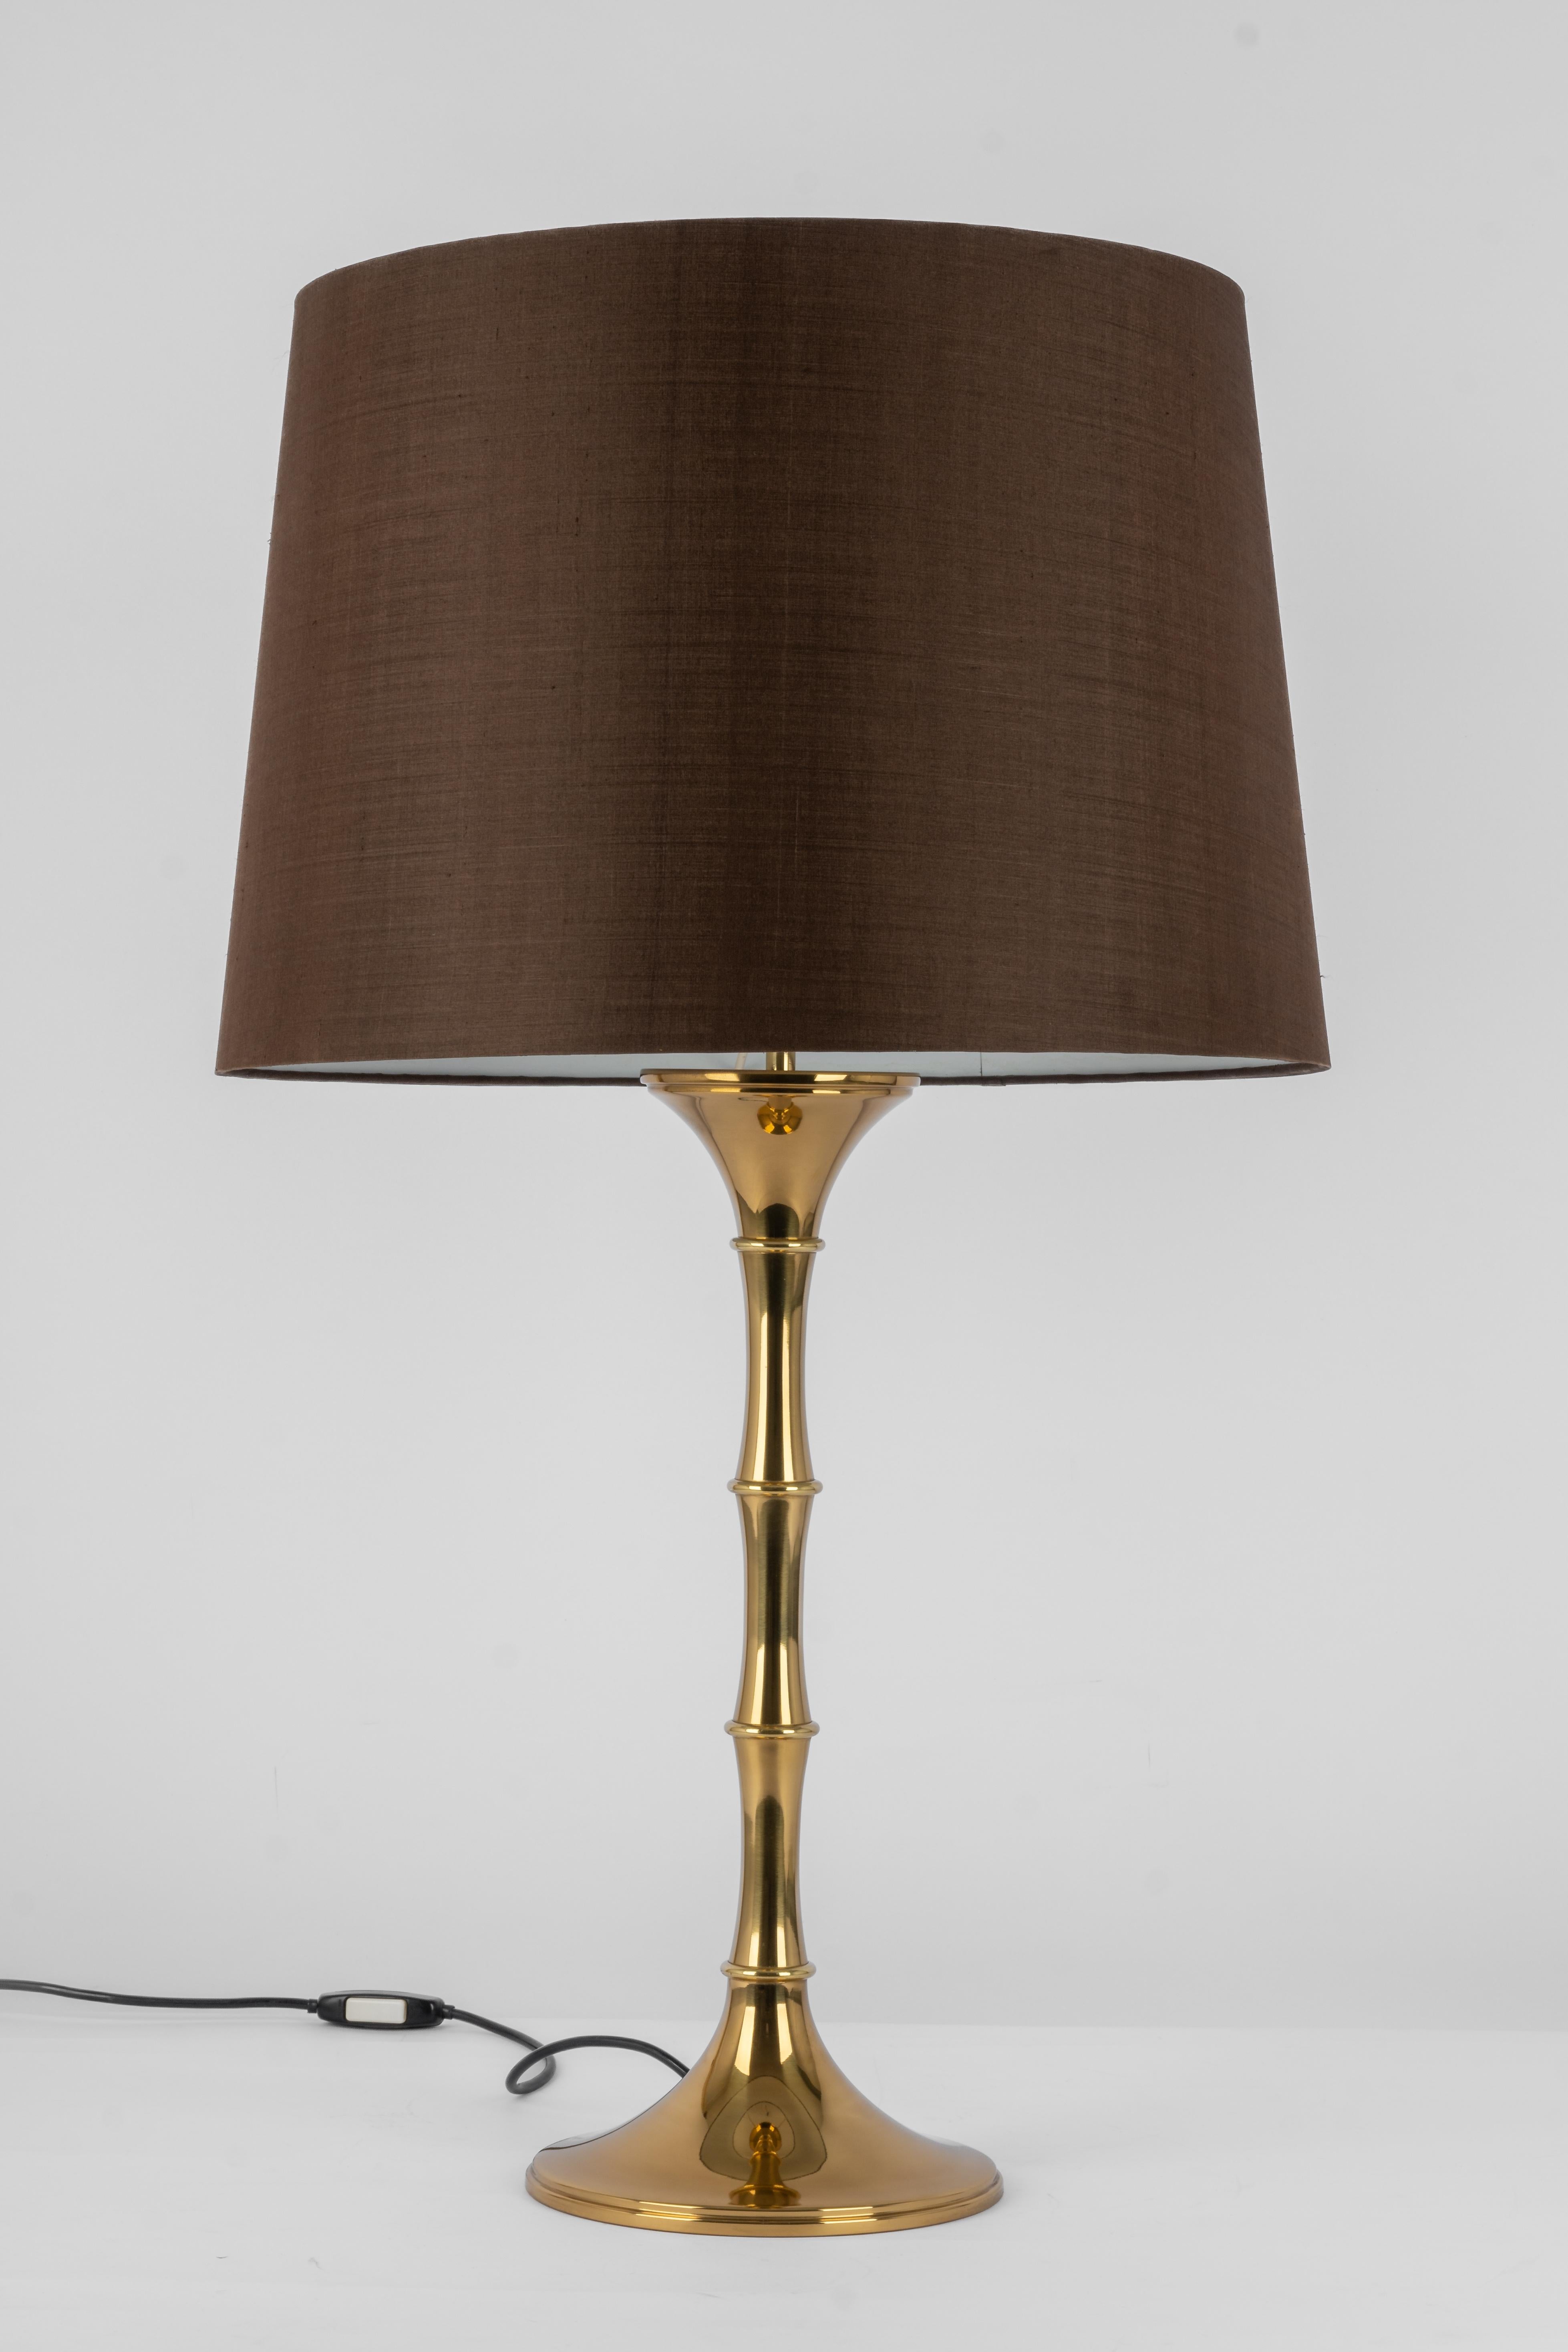 Elégantes lampes de table en bambou et laiton Modèle 'ML 1'. Conçu par Ingo Maurer, 1968 pour Design M 1968 pour Design M, Munich, Allemagne.
En pleine forme avec une teinte blanche.
Bon état avec de petits signes d'âge et d'utilisation.

Chaque